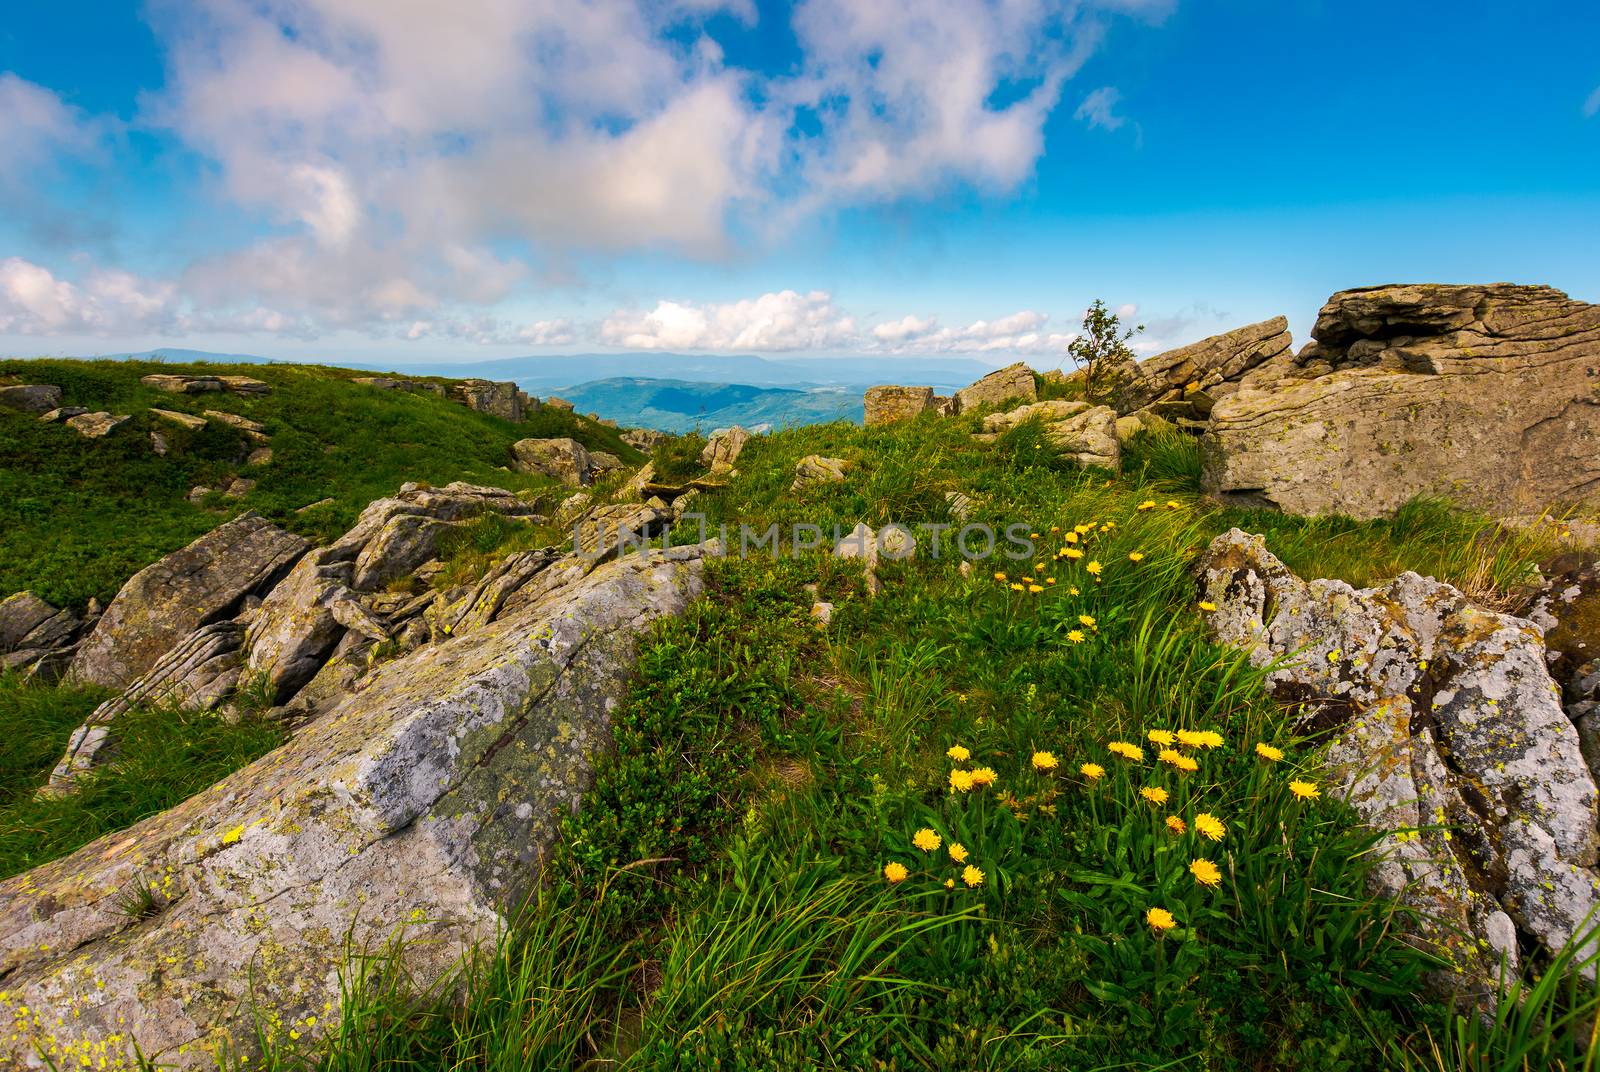 Dandelions among the rocks in Carpathian Alps by Pellinni